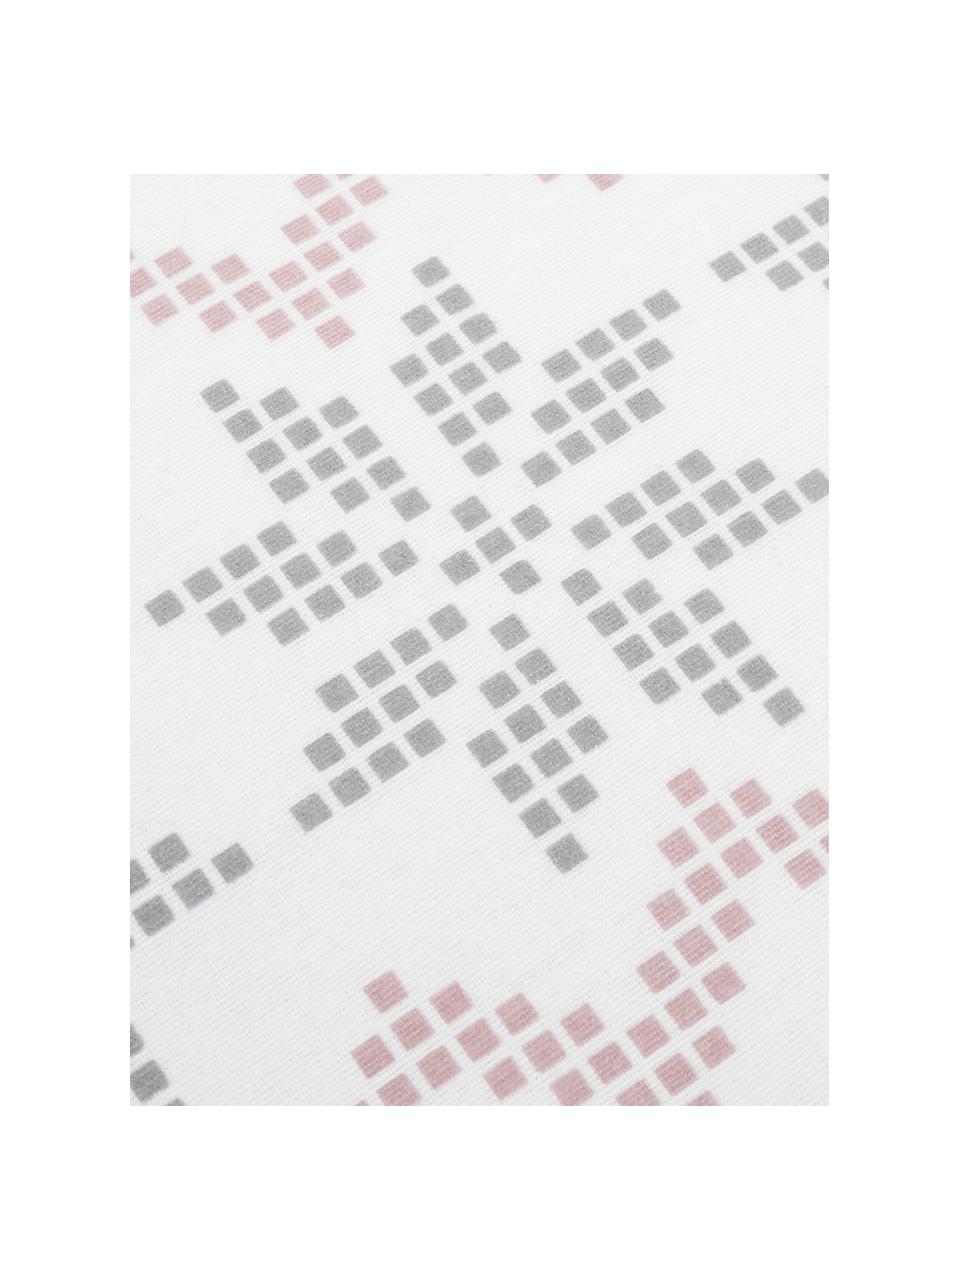 Flanell-Bettwäsche Finja mit Muster, Webart: Flanell Flanell ist ein s, Weiss, Altrosa, Grau, 135 x 200 cm + 1 Kissen 80 x 80 cm